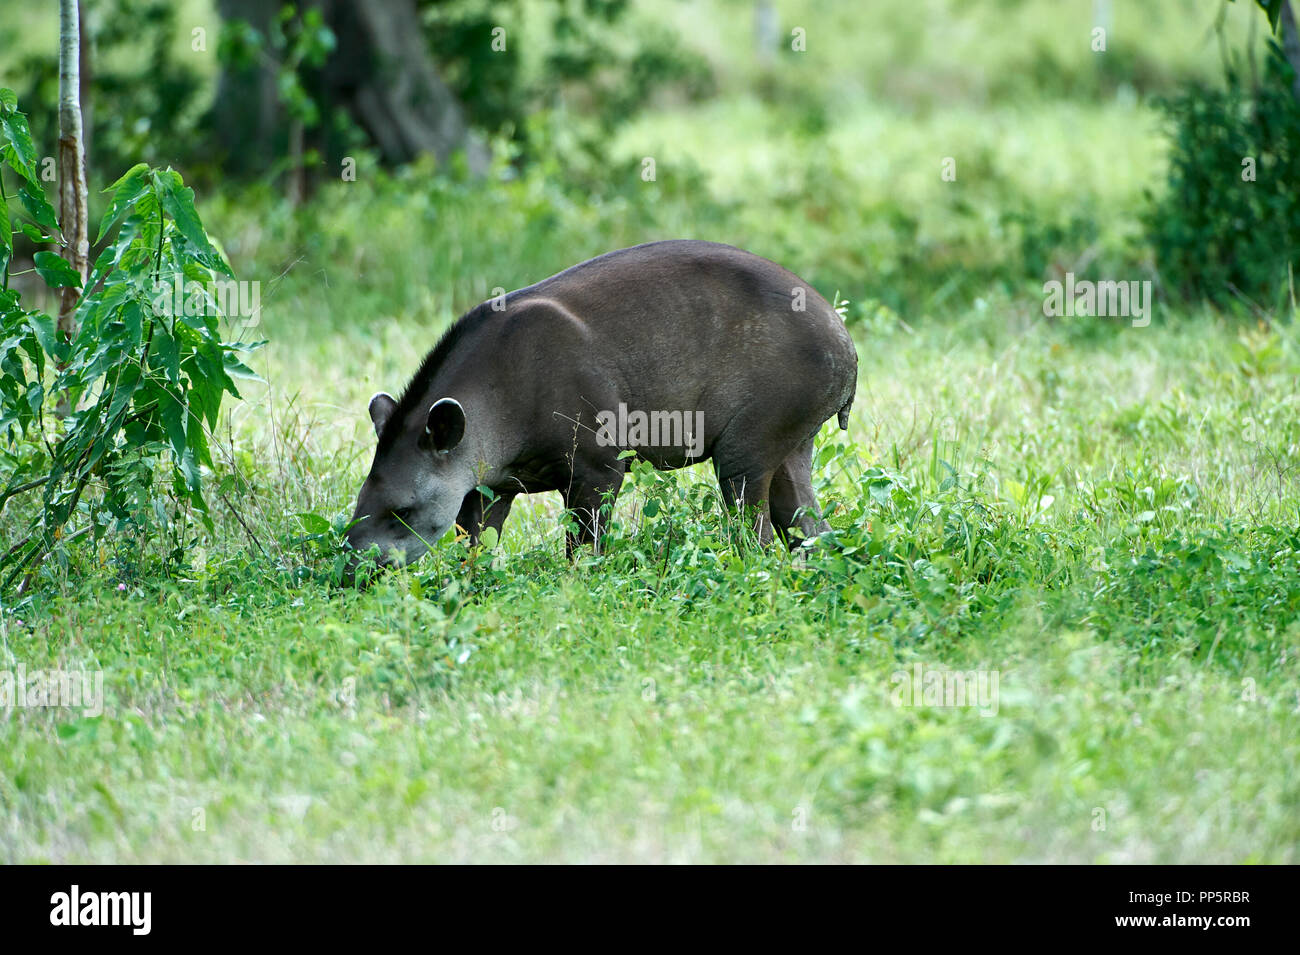 Tapir (Tapirus terrestris brésilien) d'Amérique du Sud, Tapir AKA Le Pantanal, Mato Grosso, Brésil Banque D'Images